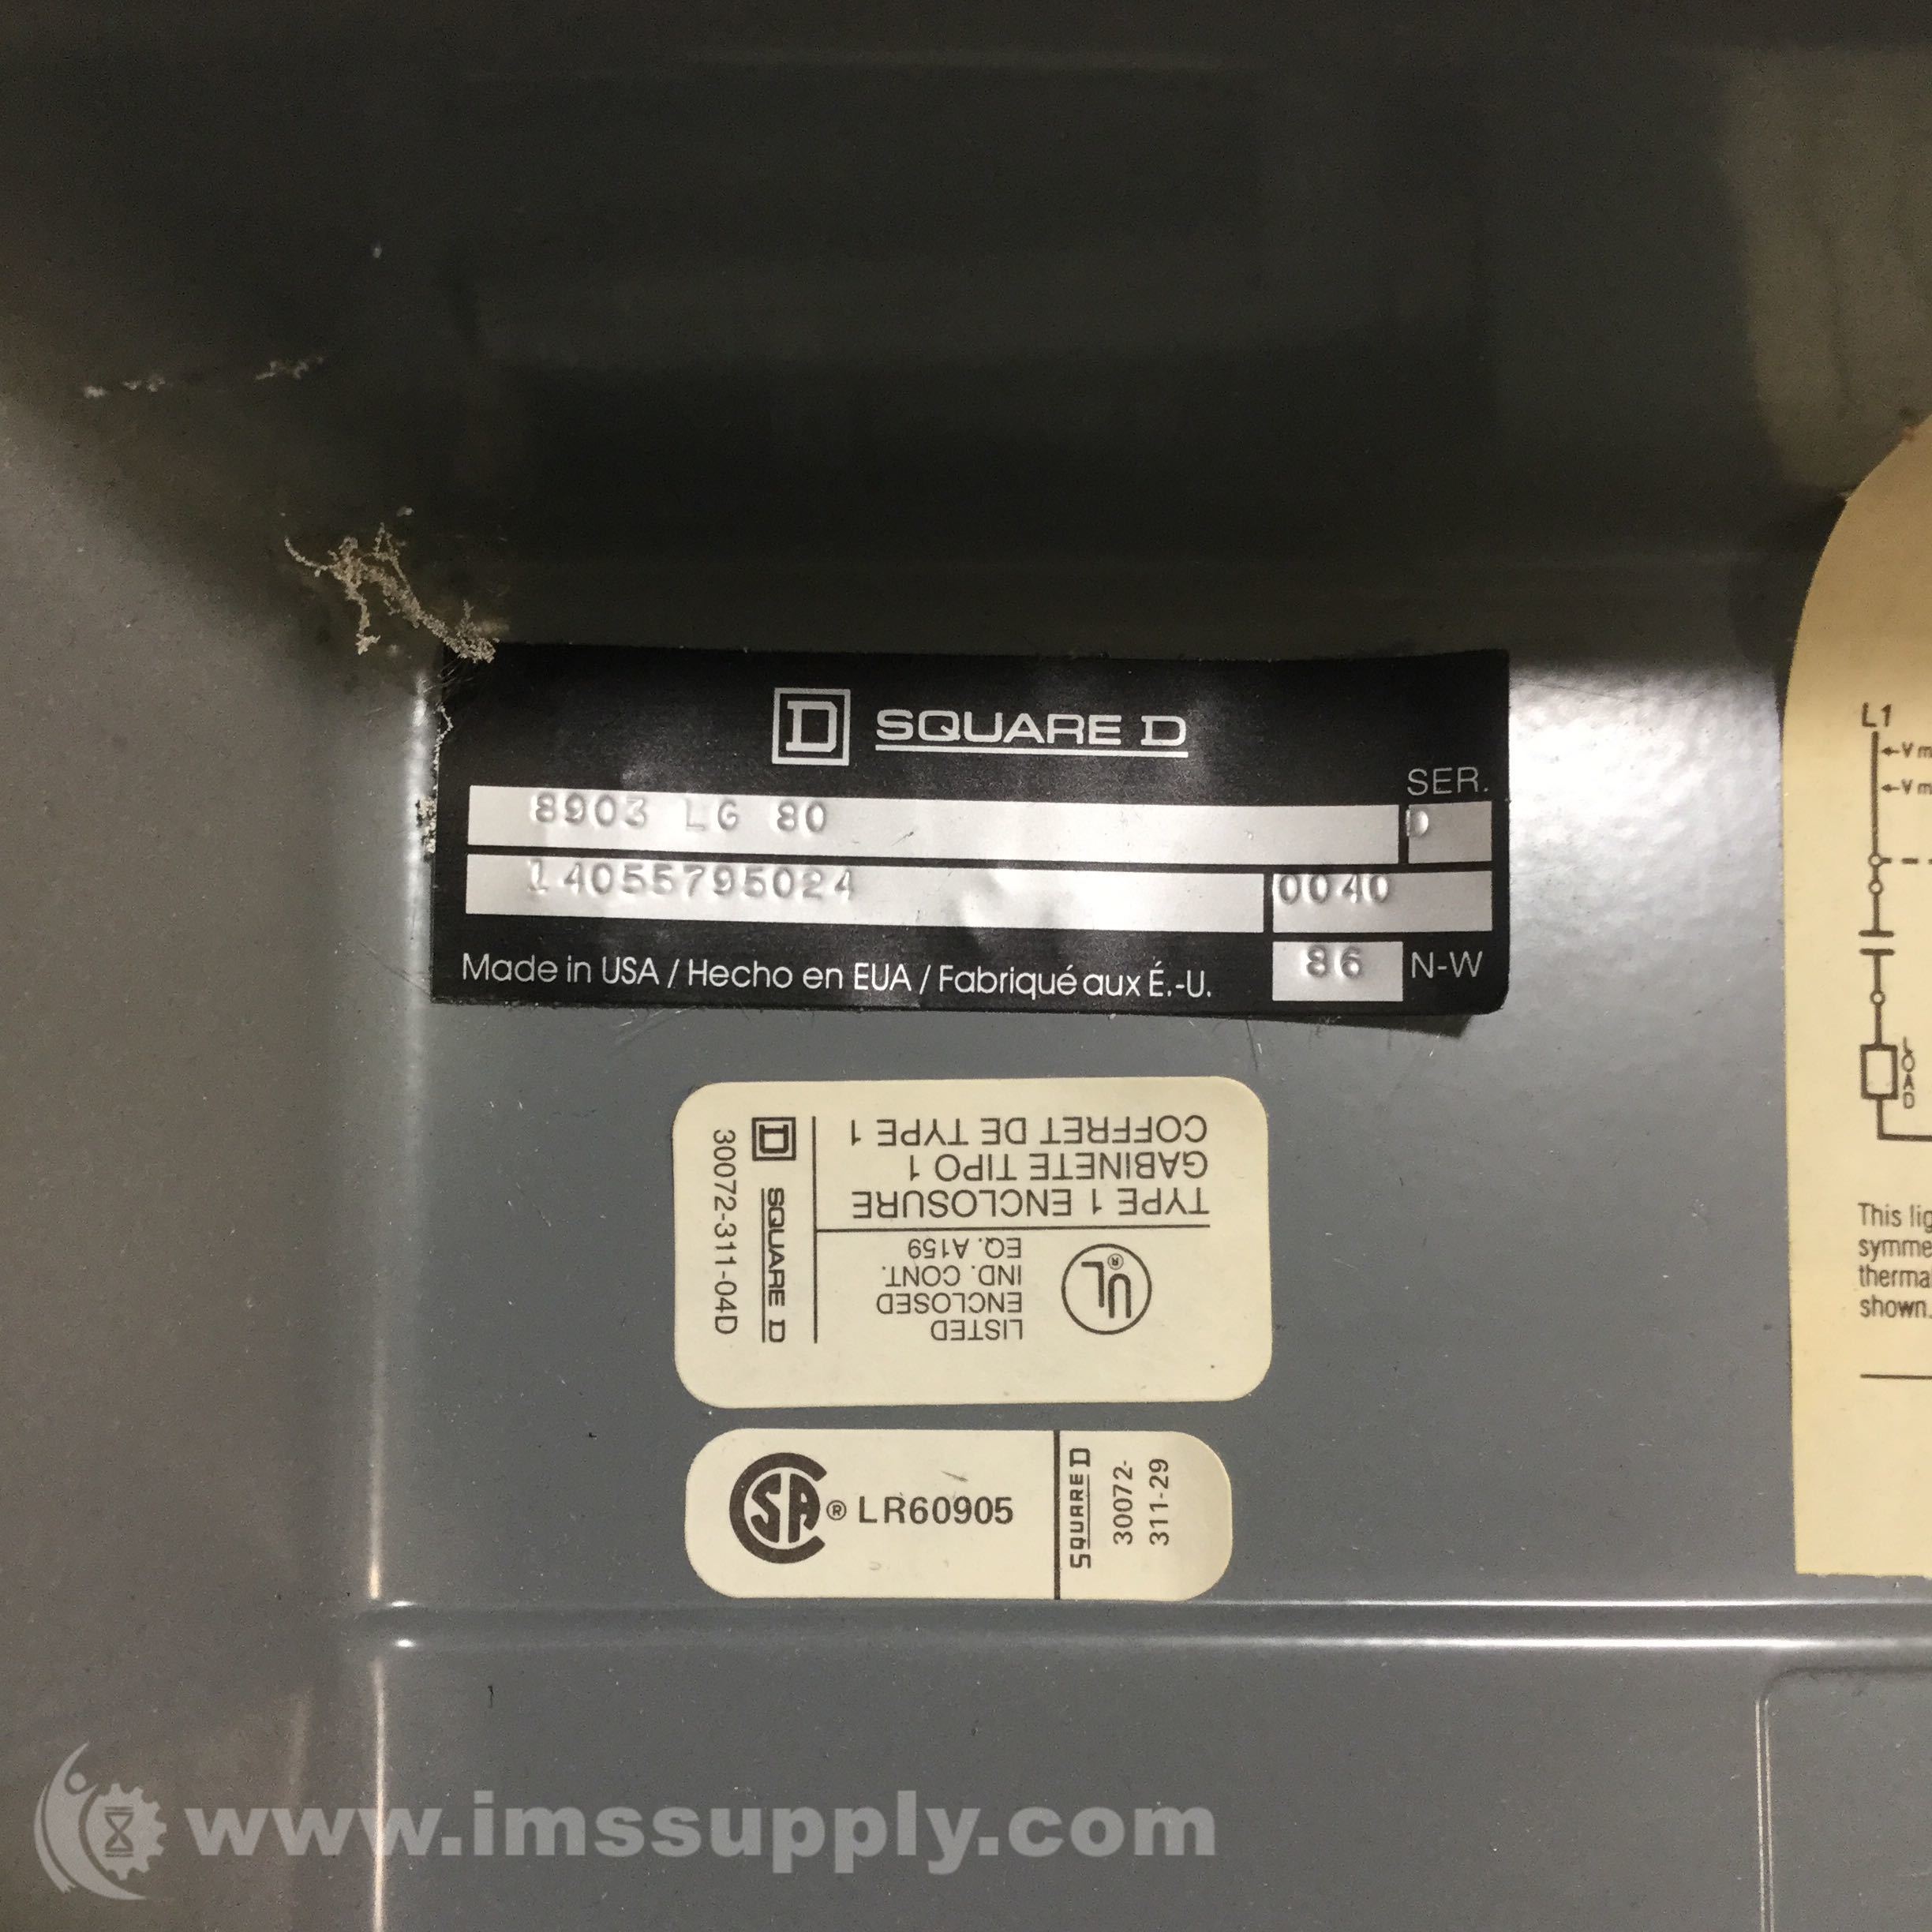 Square D 8903 LG-80 Iluminación Contactor En Caja Nib